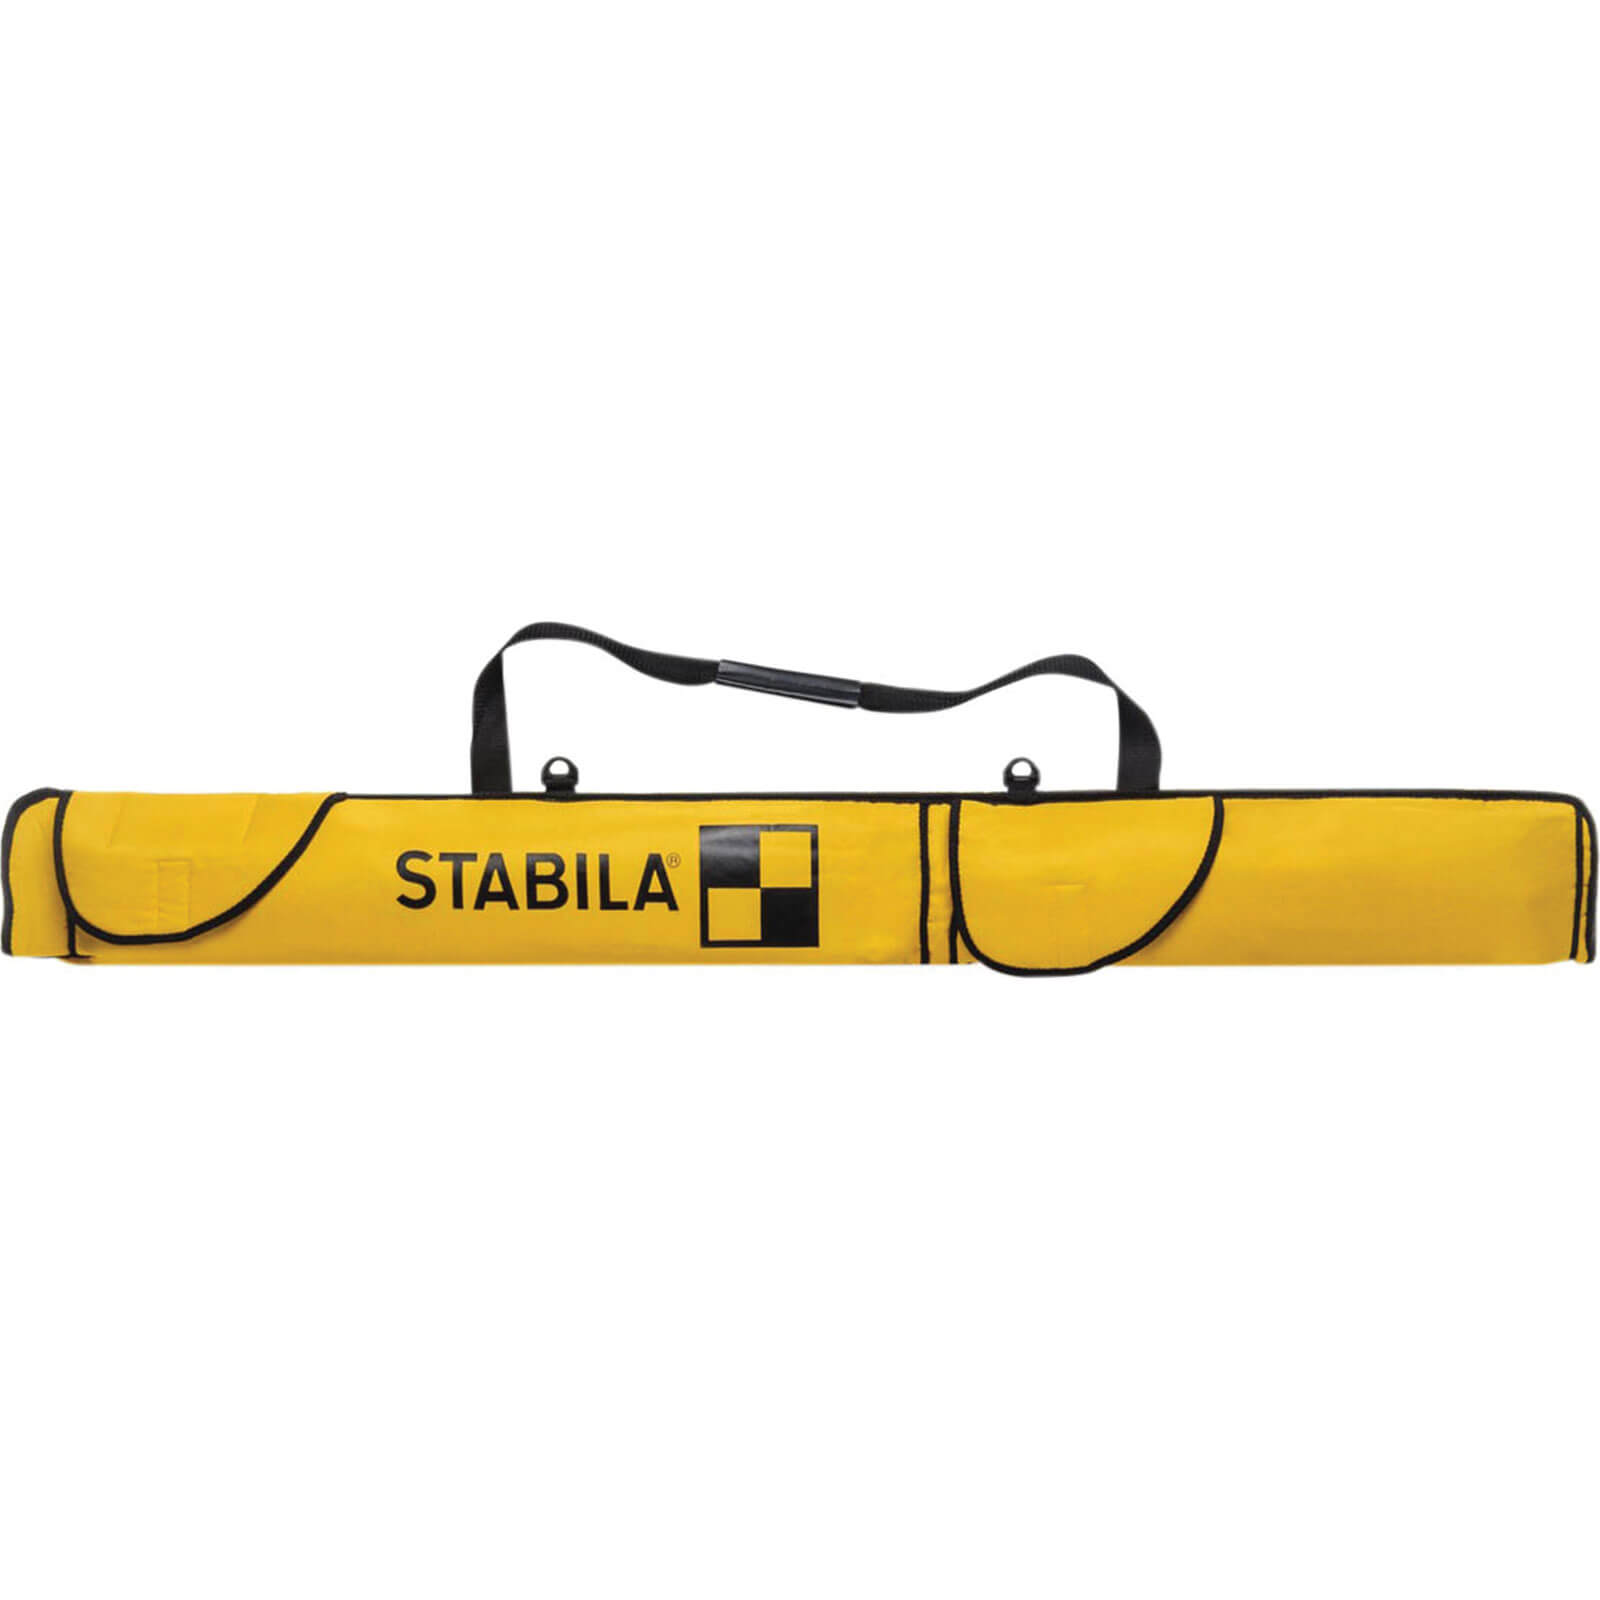 Image of Stabila Combi Spirit Level Bag 78" / 200cm